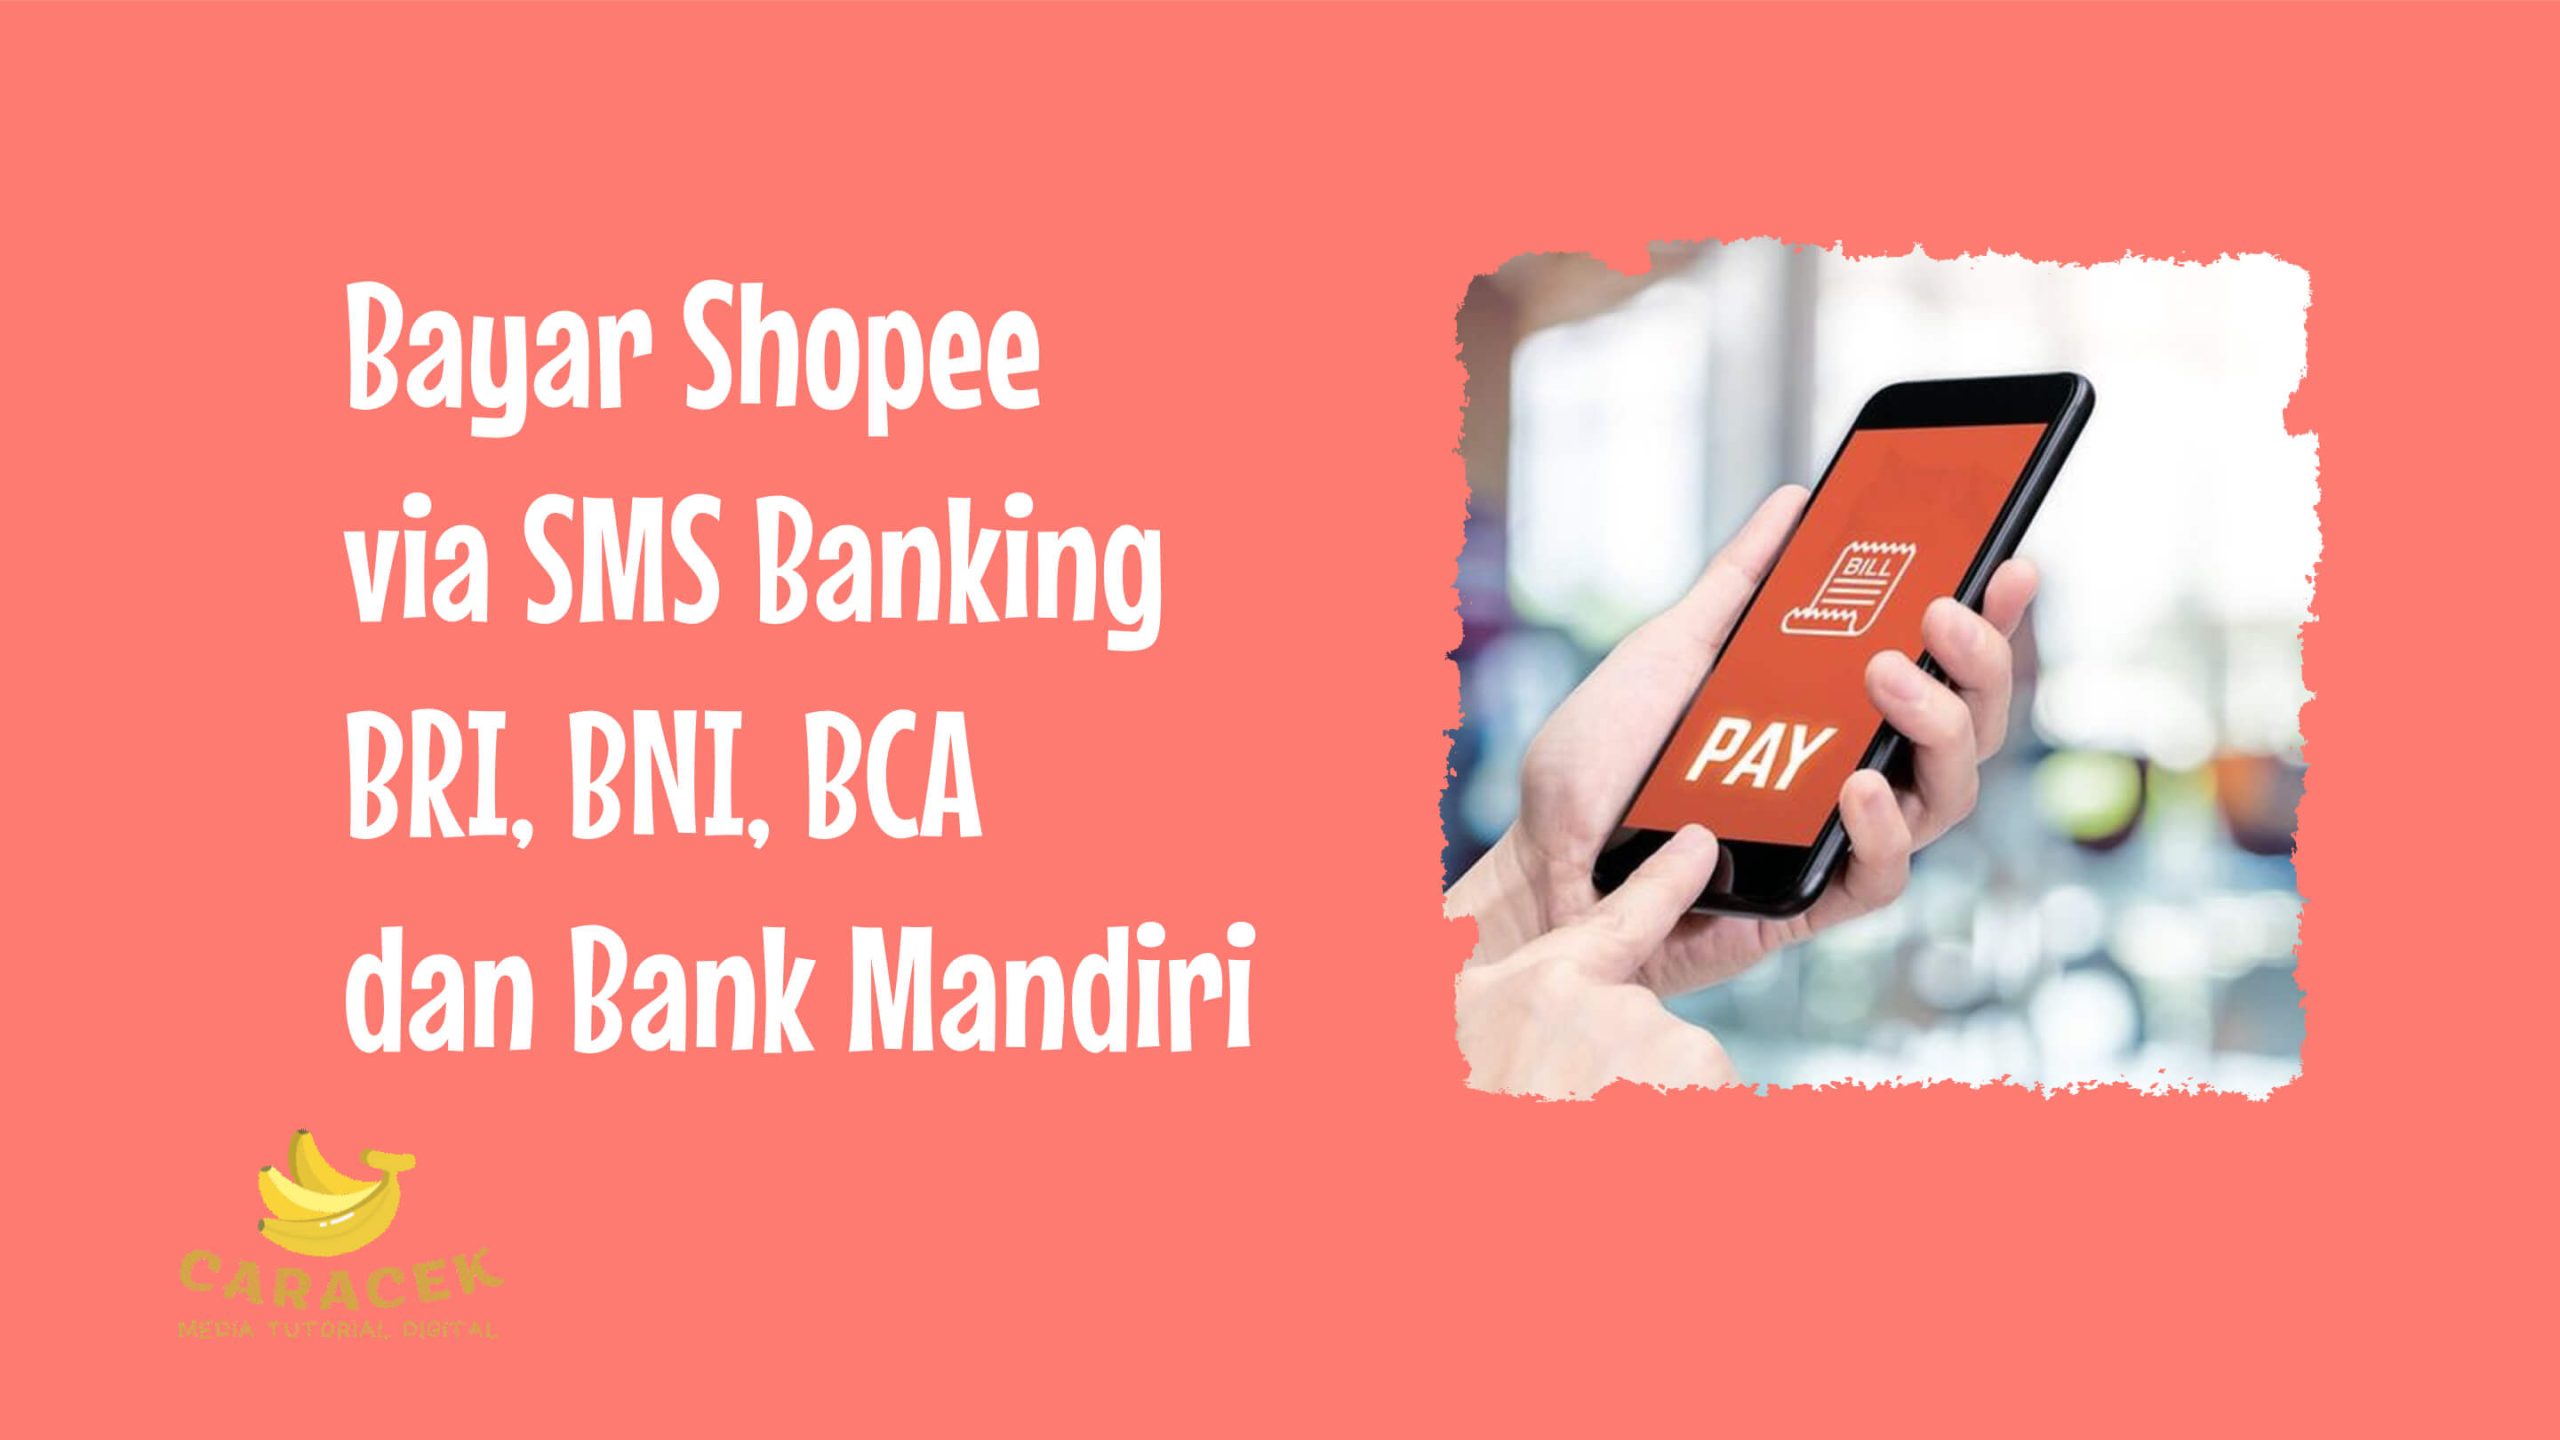 Bayar Shopee via SMS Banking